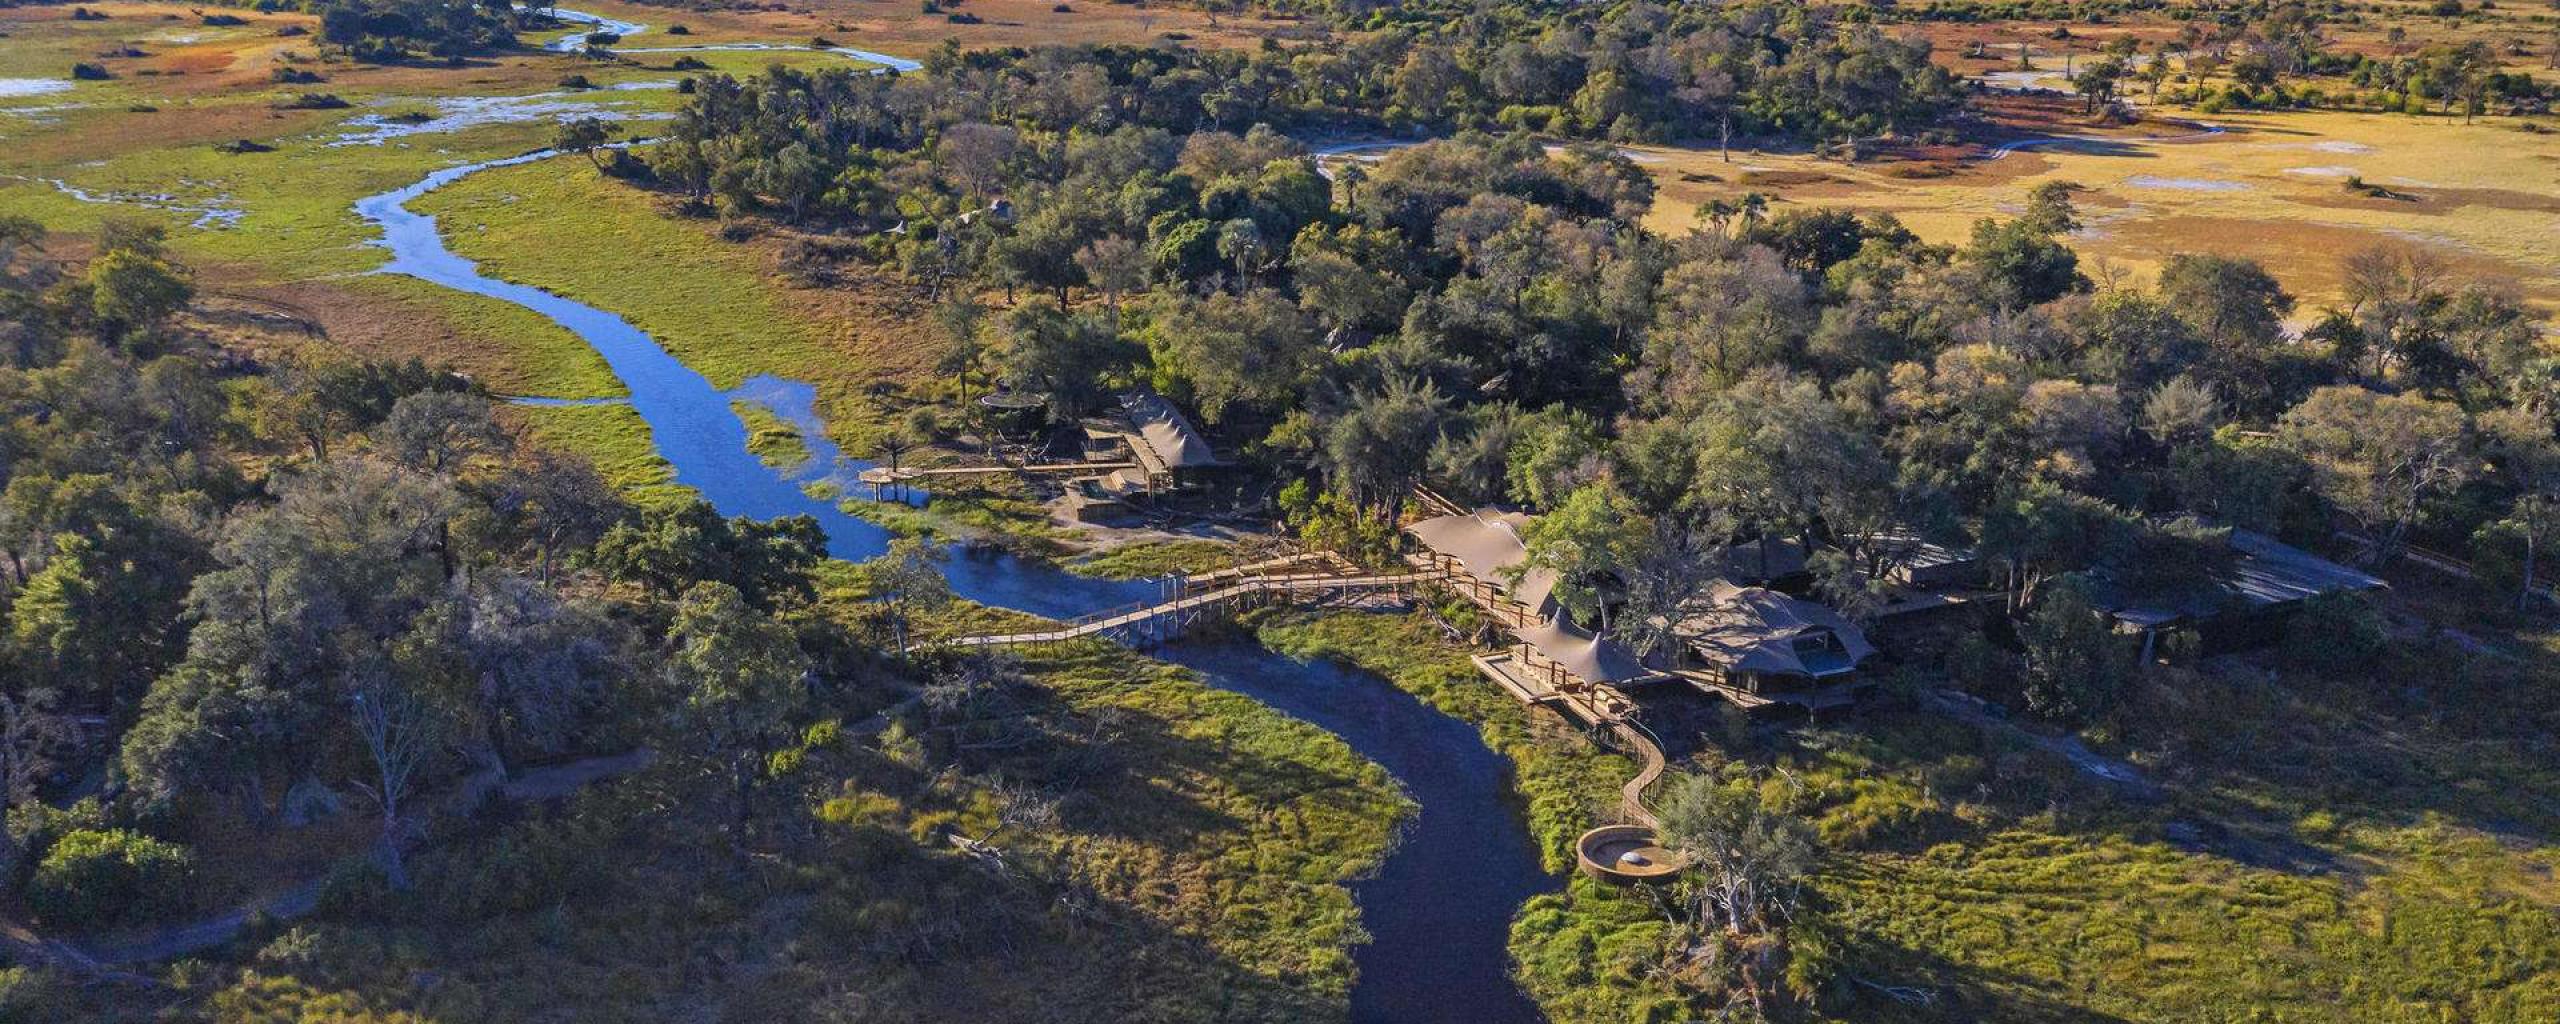 Xigera - Okavango Delta